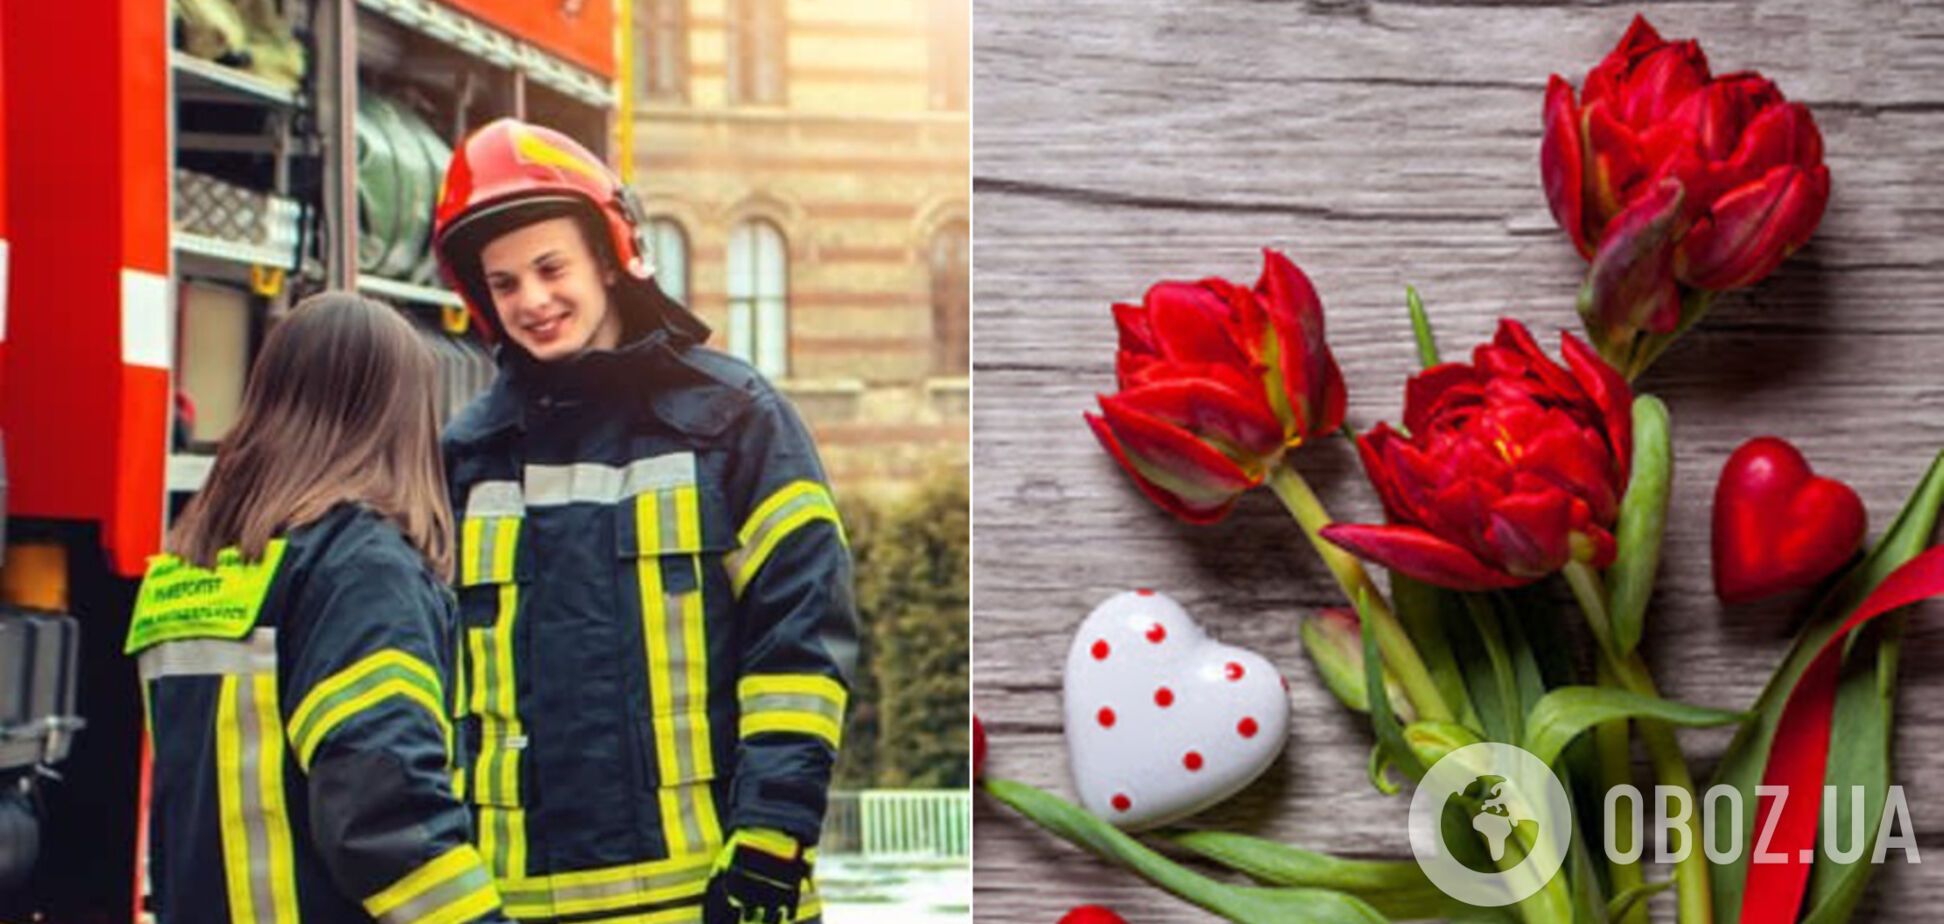 Спасатели Киева необычно поздравили с Днем святого Валентина. Иллюстрация